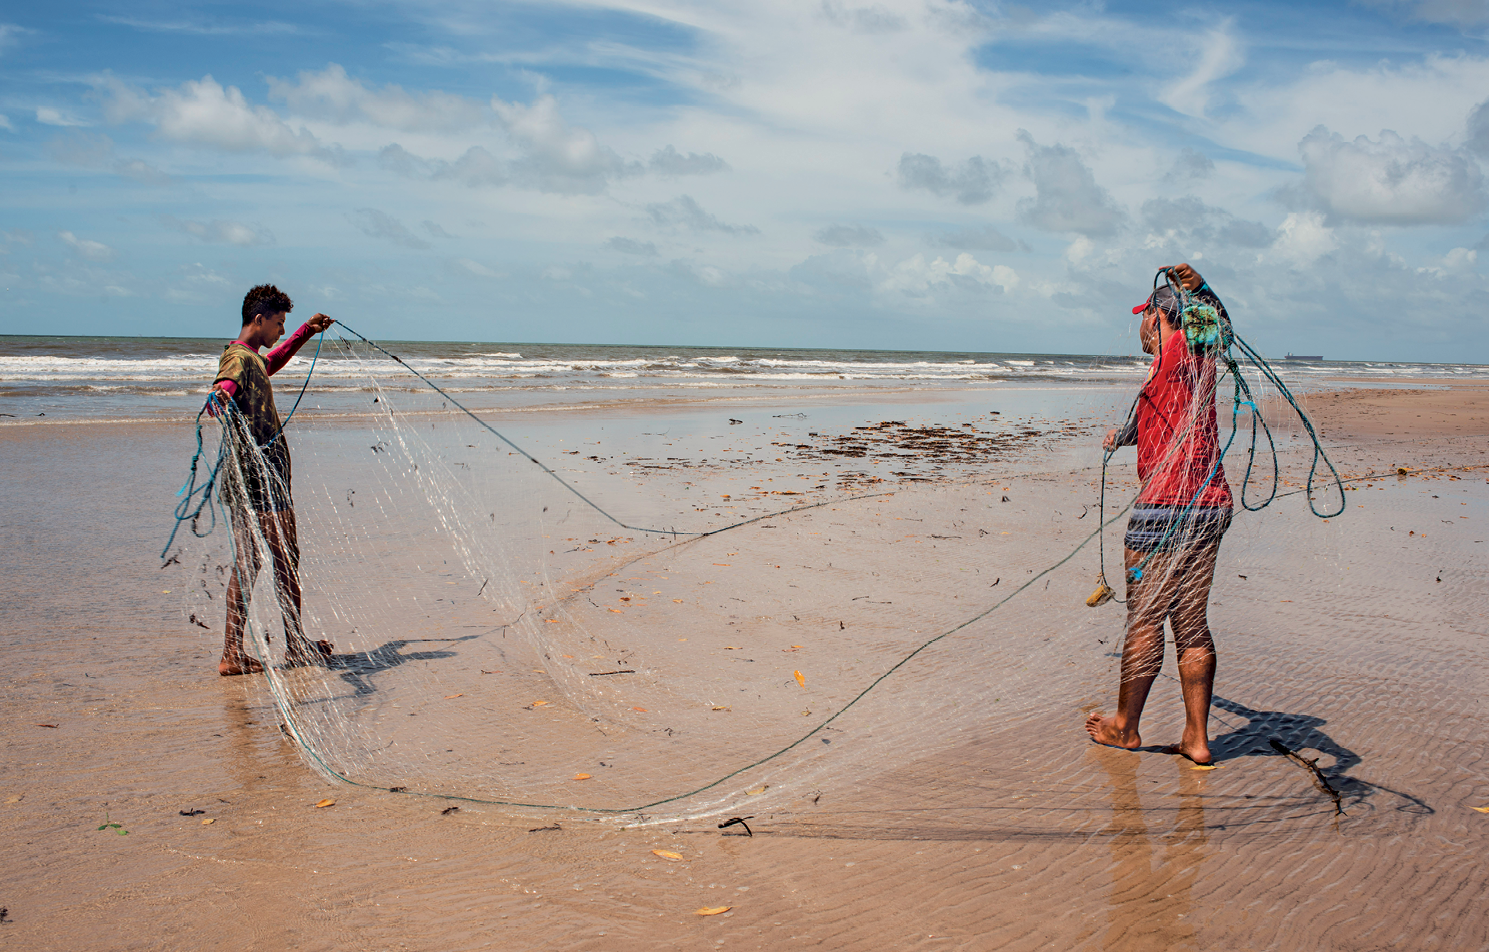 Fotografia. Vista de uma praia com uma extensa faixa de areia e a água do mar ao fundo. Em destaque, na areia, dois homens manuseando uma rede de pesca.